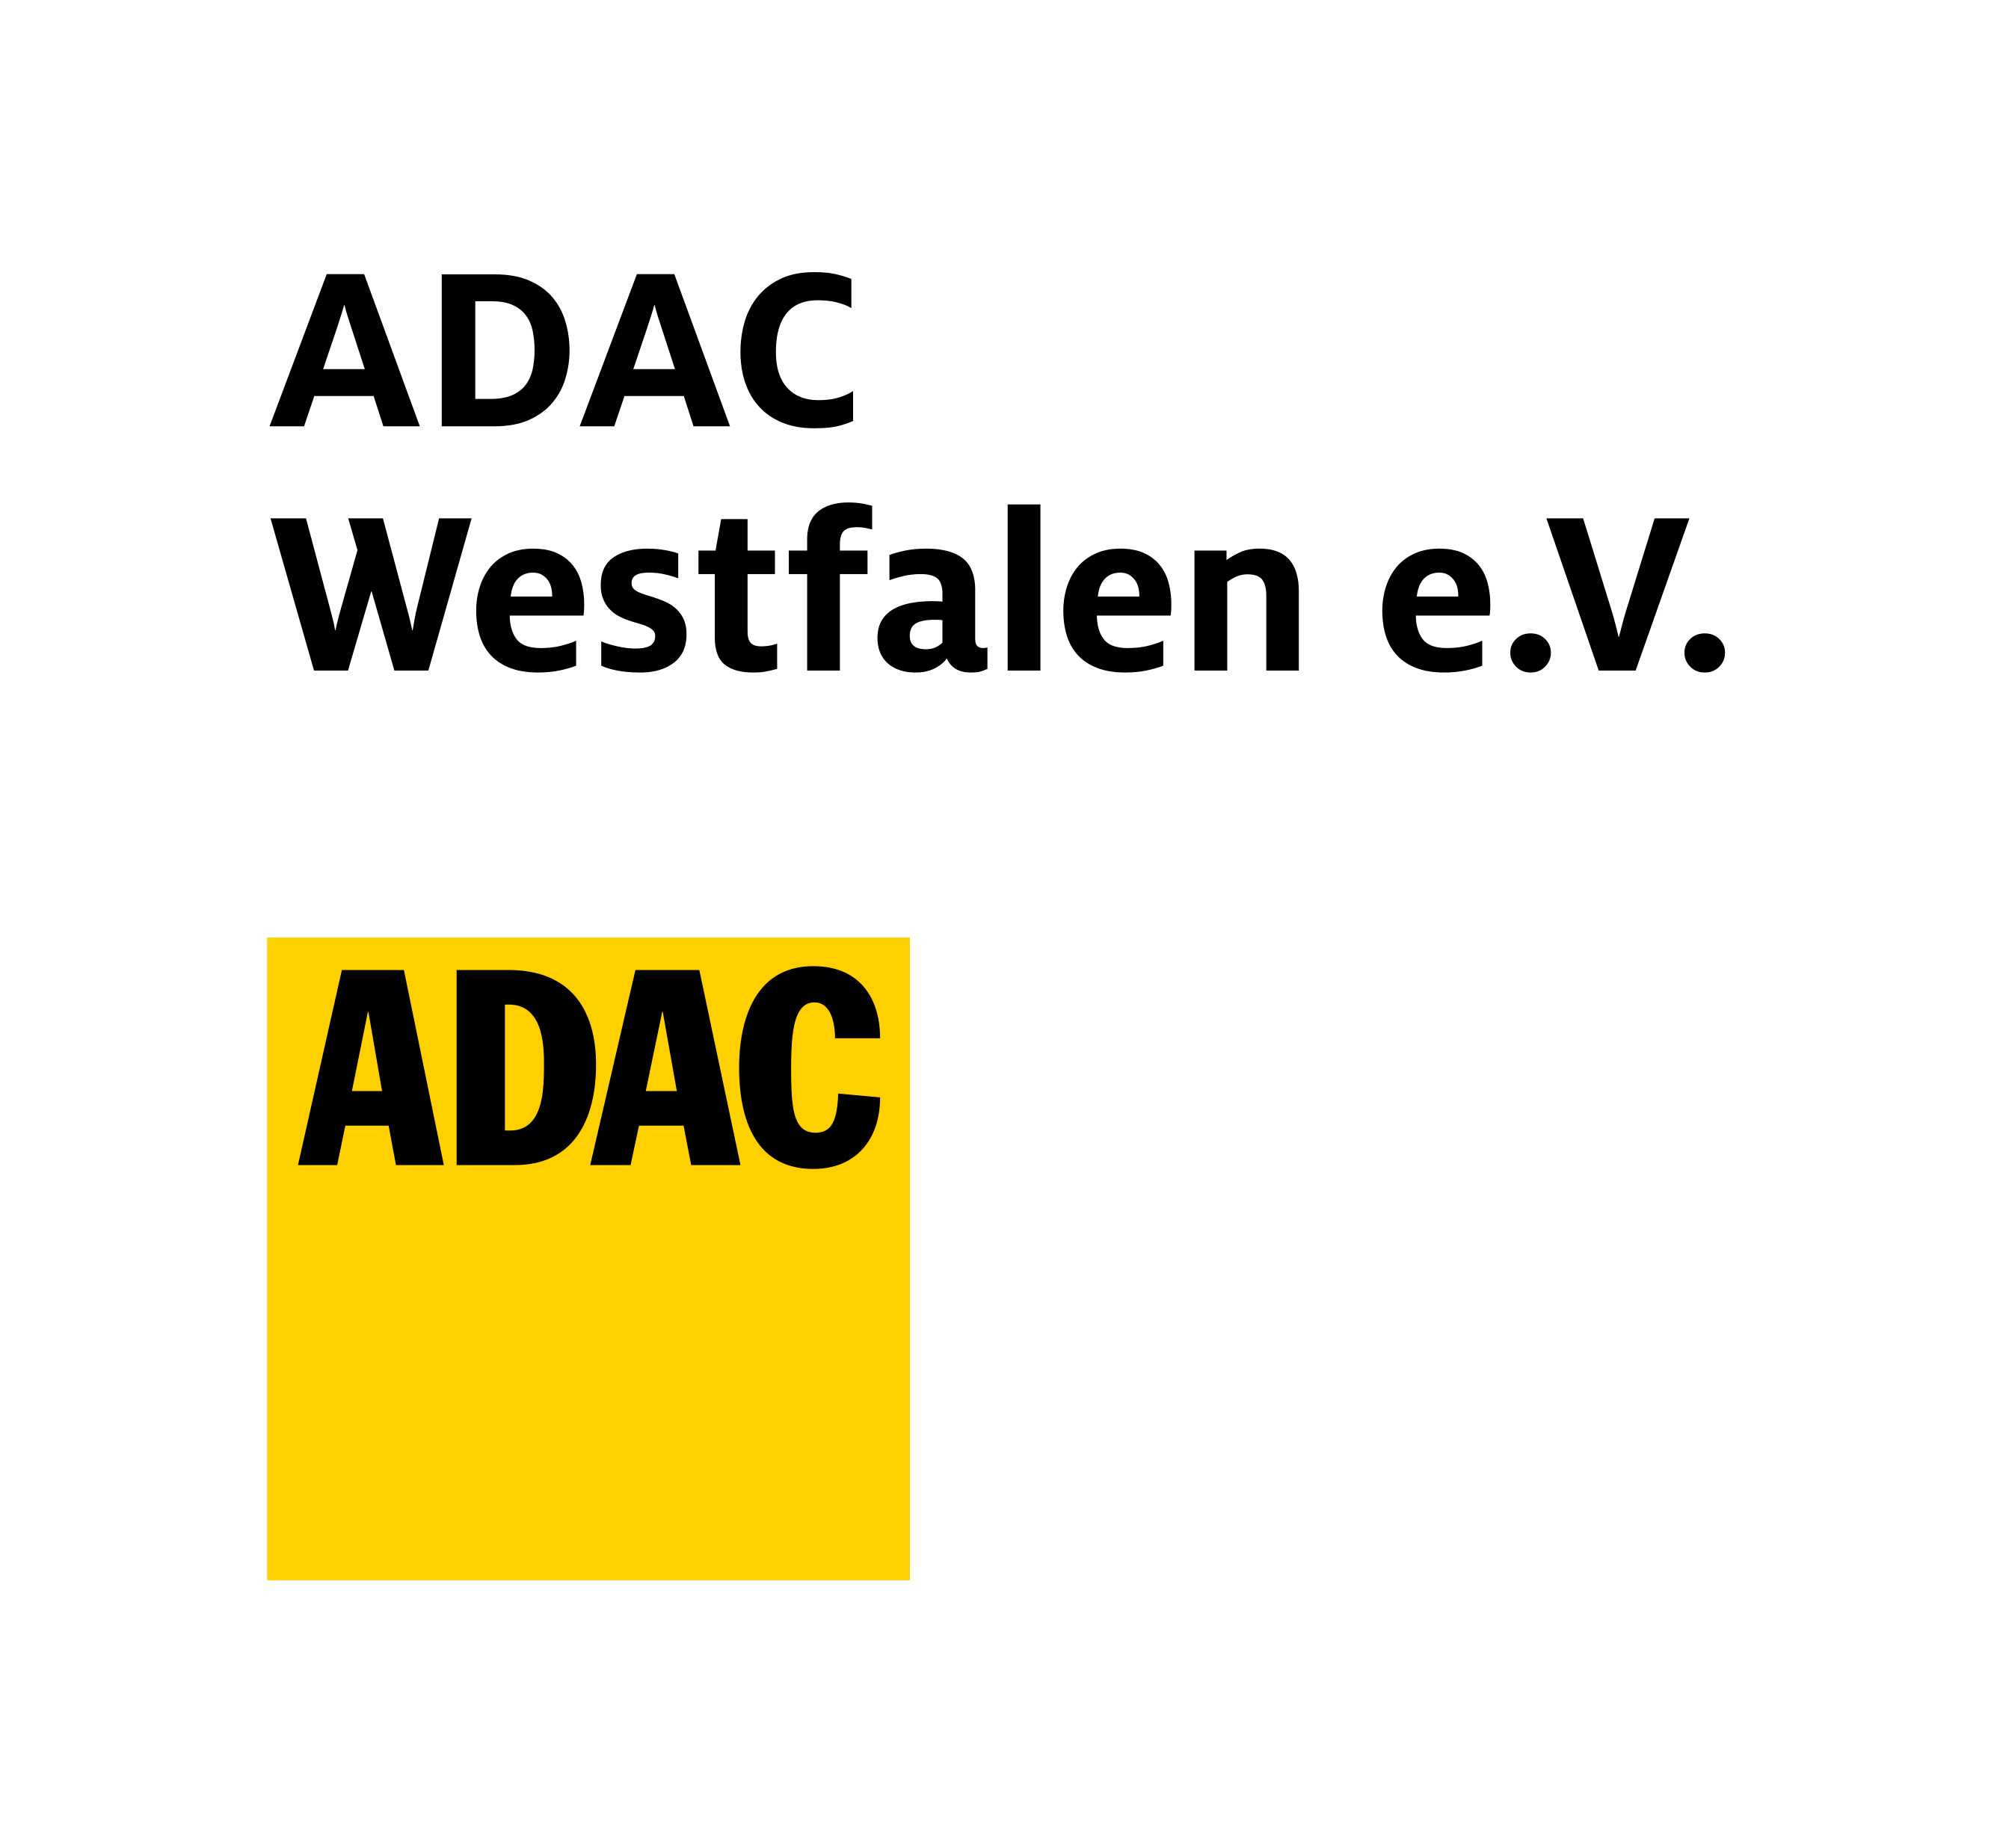 ADAC Westfalen e.V. © ADAC Westfalen e.V.